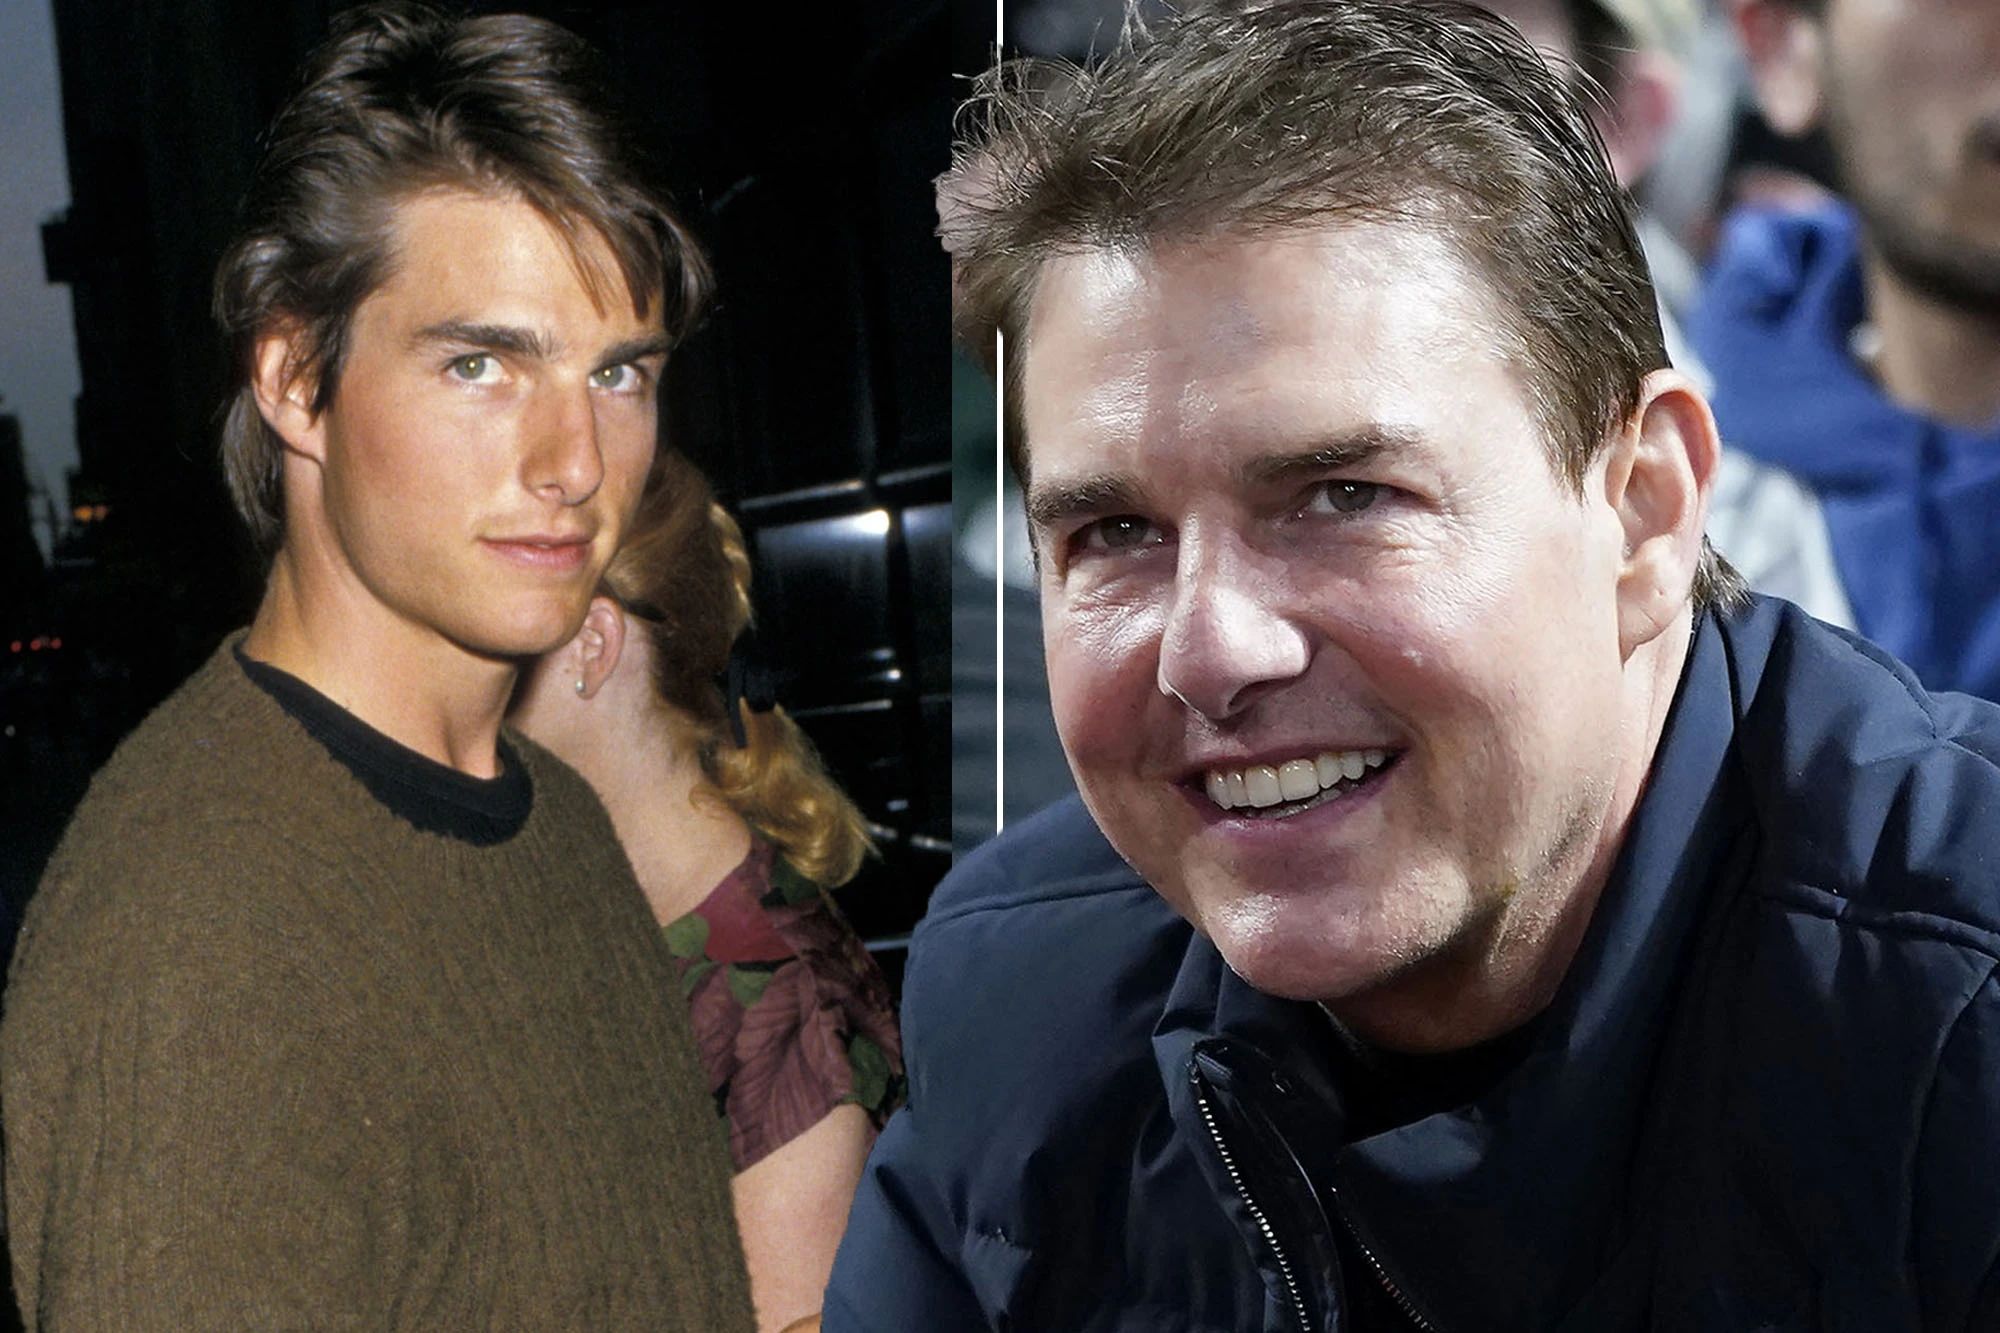 Cộng đồng mạng tìm lại hình ảnh của Tom Cruise ngày trước để so sánh.